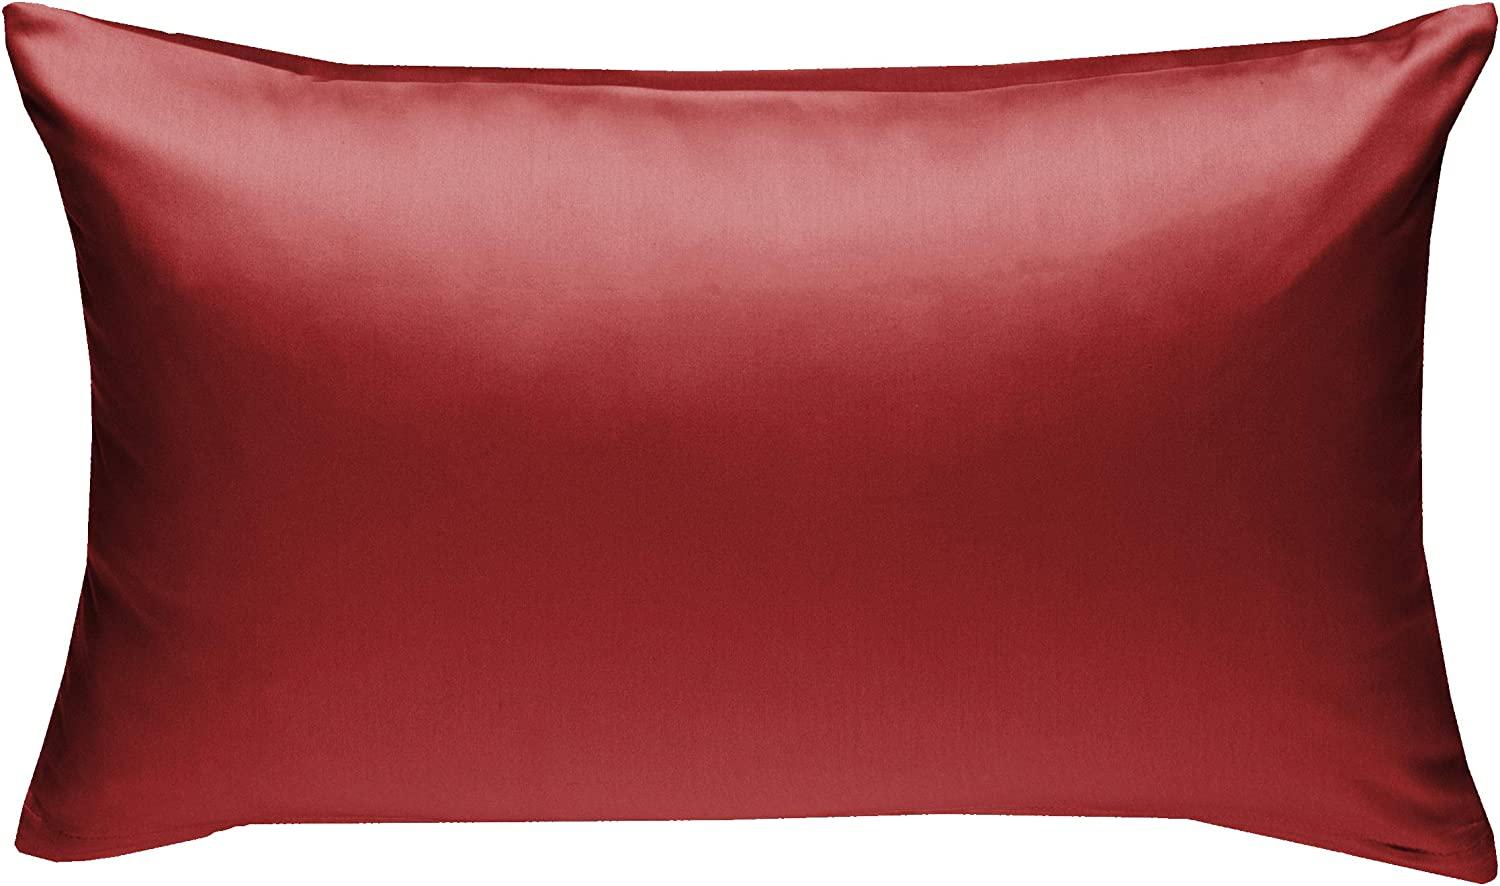 Bettwaesche-mit-Stil Mako-Satin / Baumwollsatin Bettwäsche uni / einfarbig rot Kissenbezug 40x60 cm Bild 1